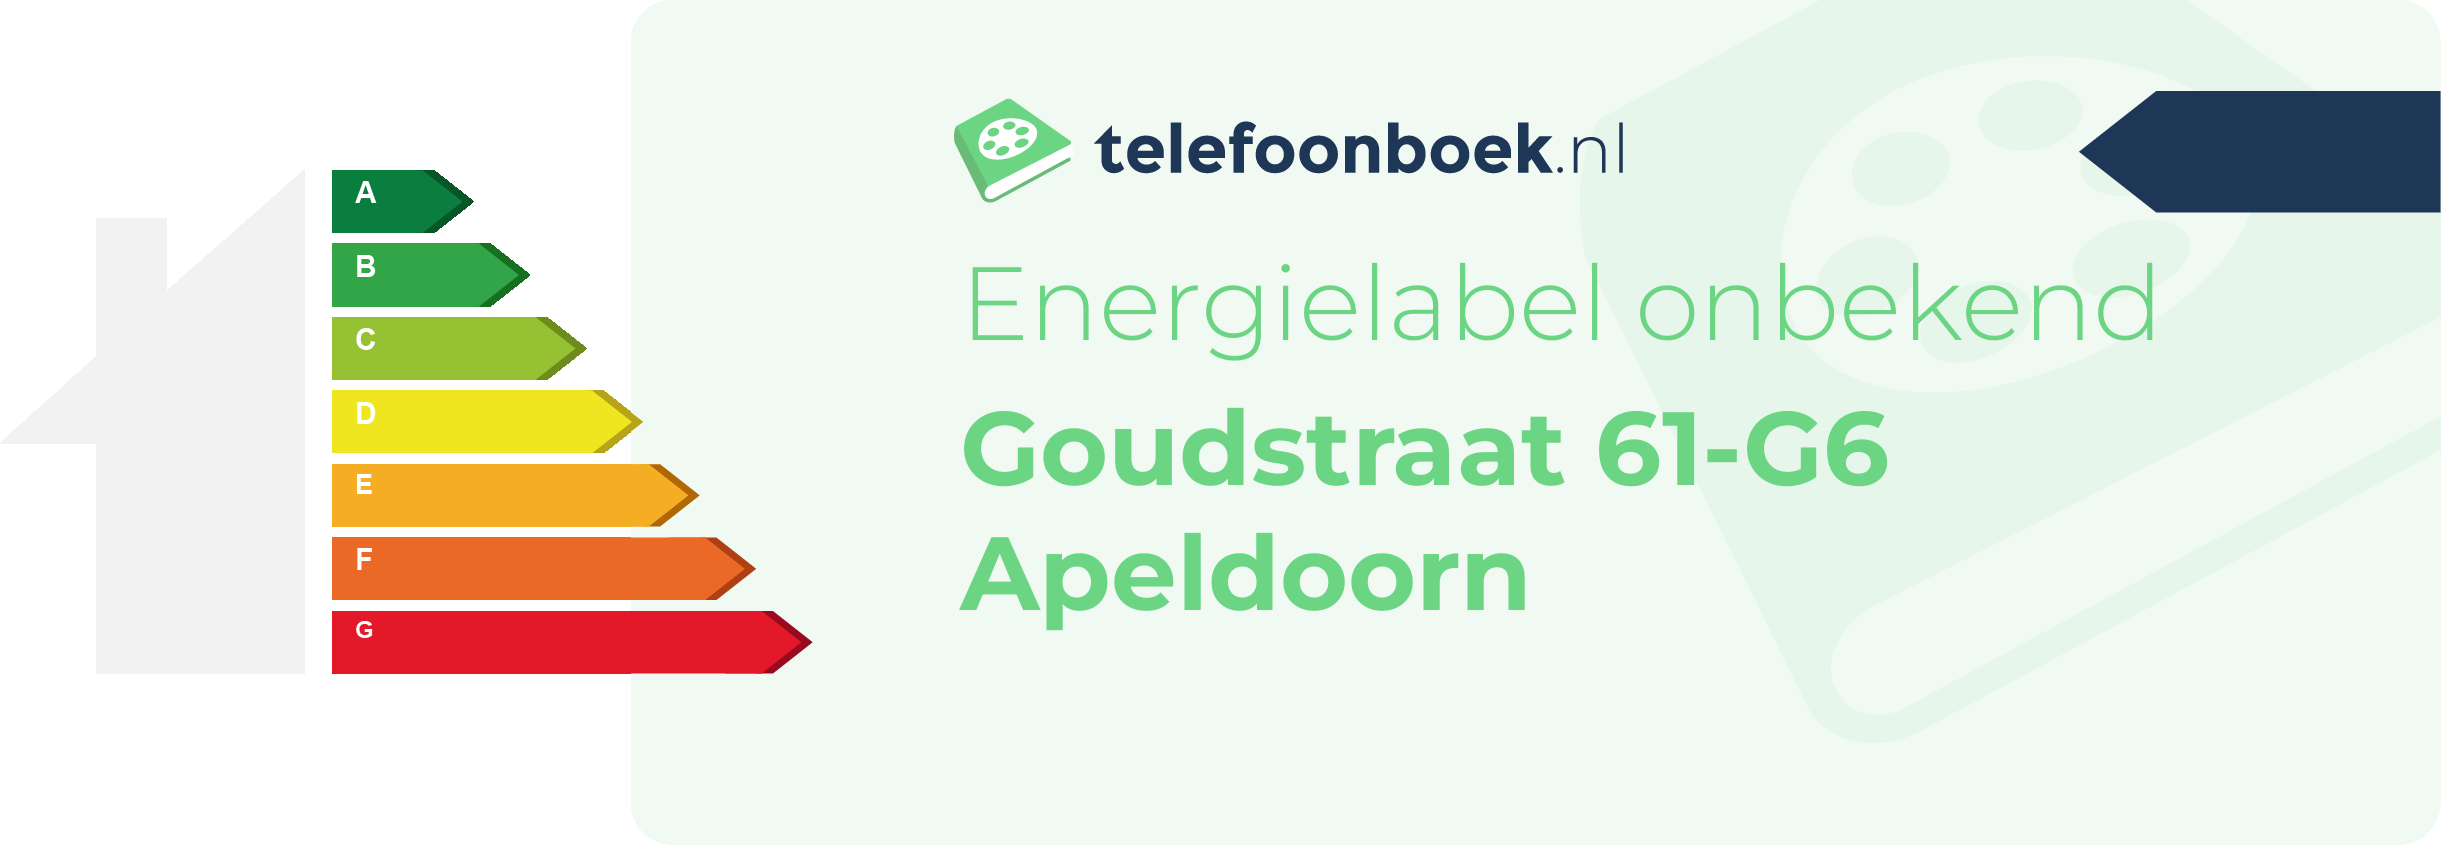 Energielabel Goudstraat 61-G6 Apeldoorn